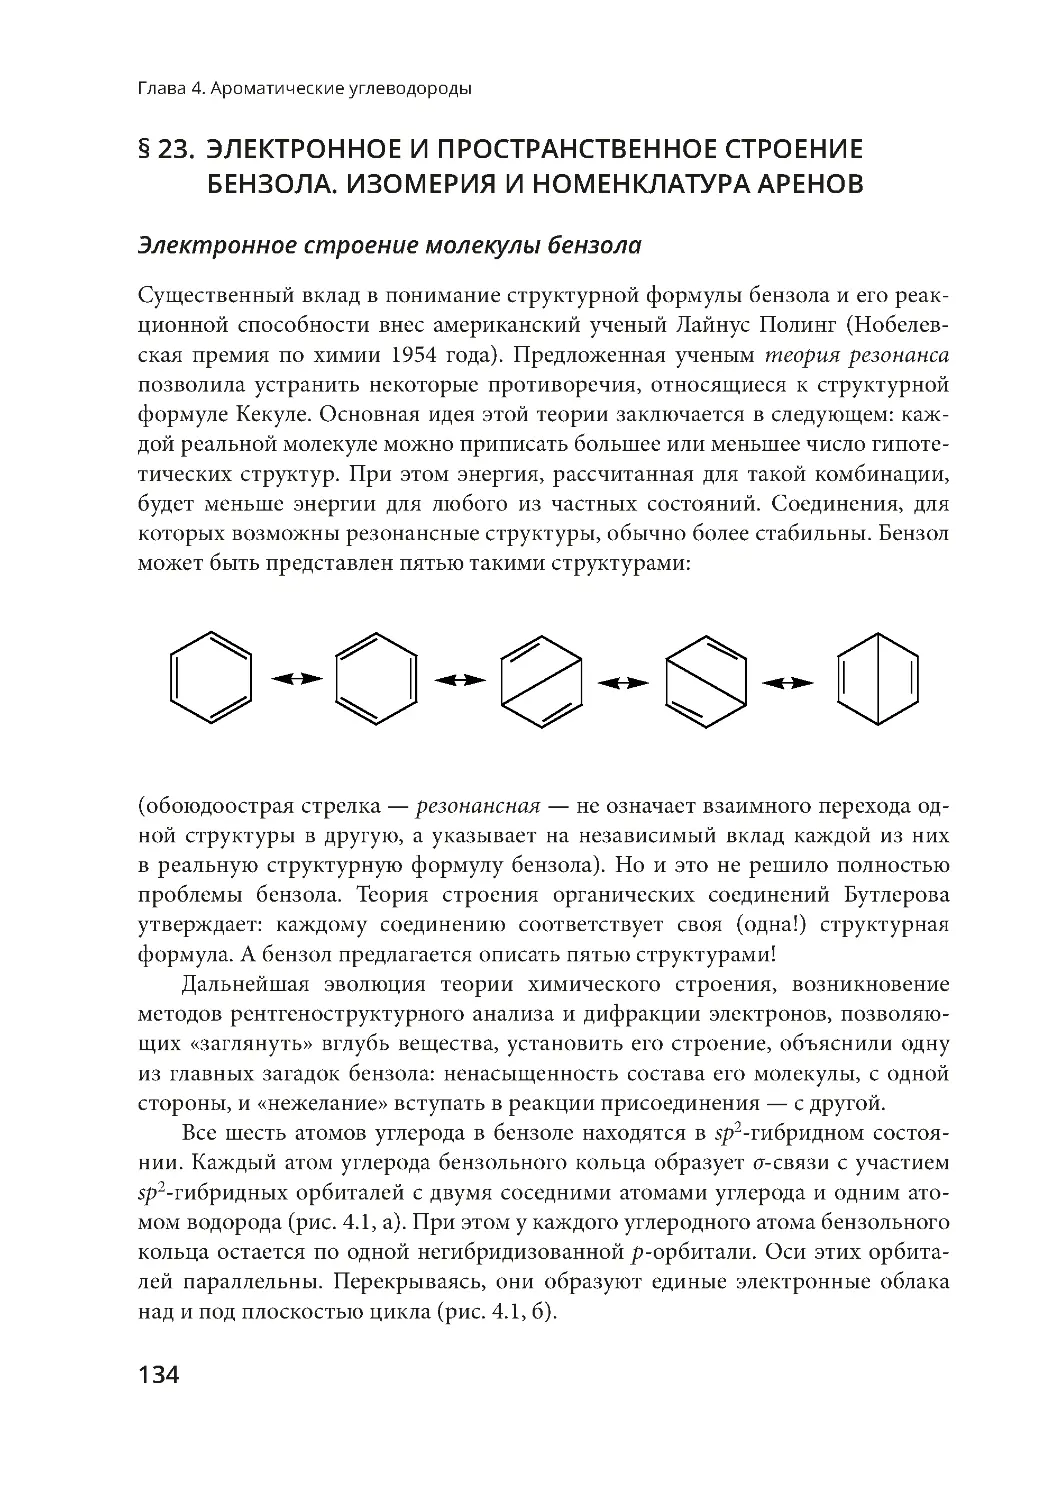 § 23. Электронное и пространственное строение бензола. Изомерия и номенклатура аренов